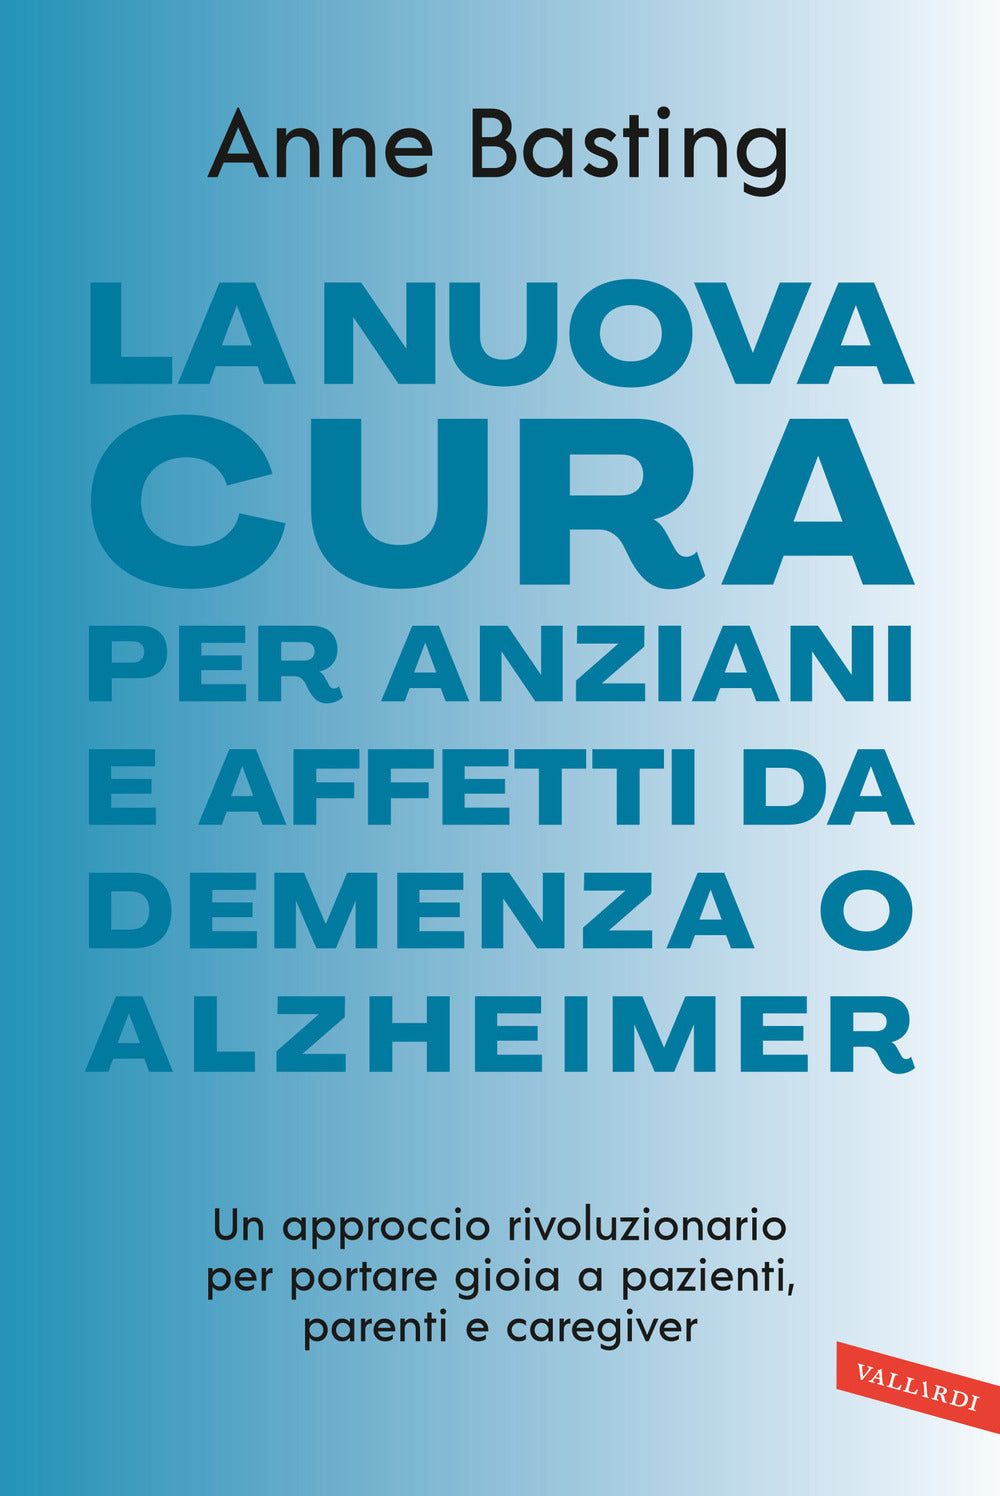 La nuova cura per anziani e affetti da demenza o Alzheimer. Un approccio rivoluzionario per portare gioia a pazienti, parenti e caregiver